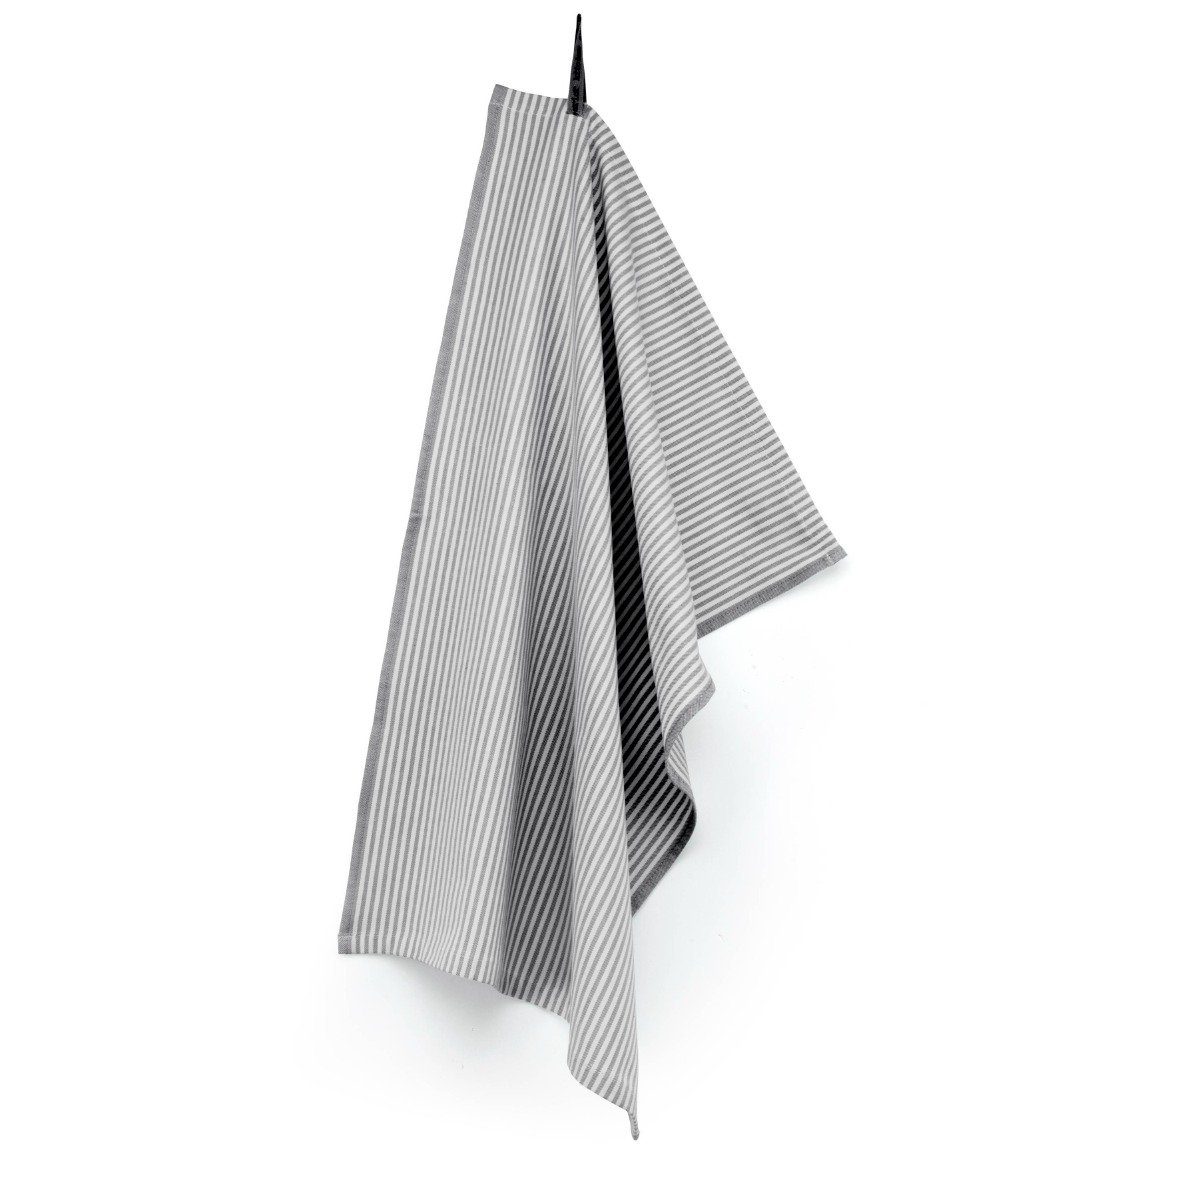 Walra Geschirrtuch Geschirrhandtuch Superior Dry Cloth Anthrazit - 50x70 cm, aus 100% Baumwolle, Premium-Qualität - Vielfältig einsetzbares